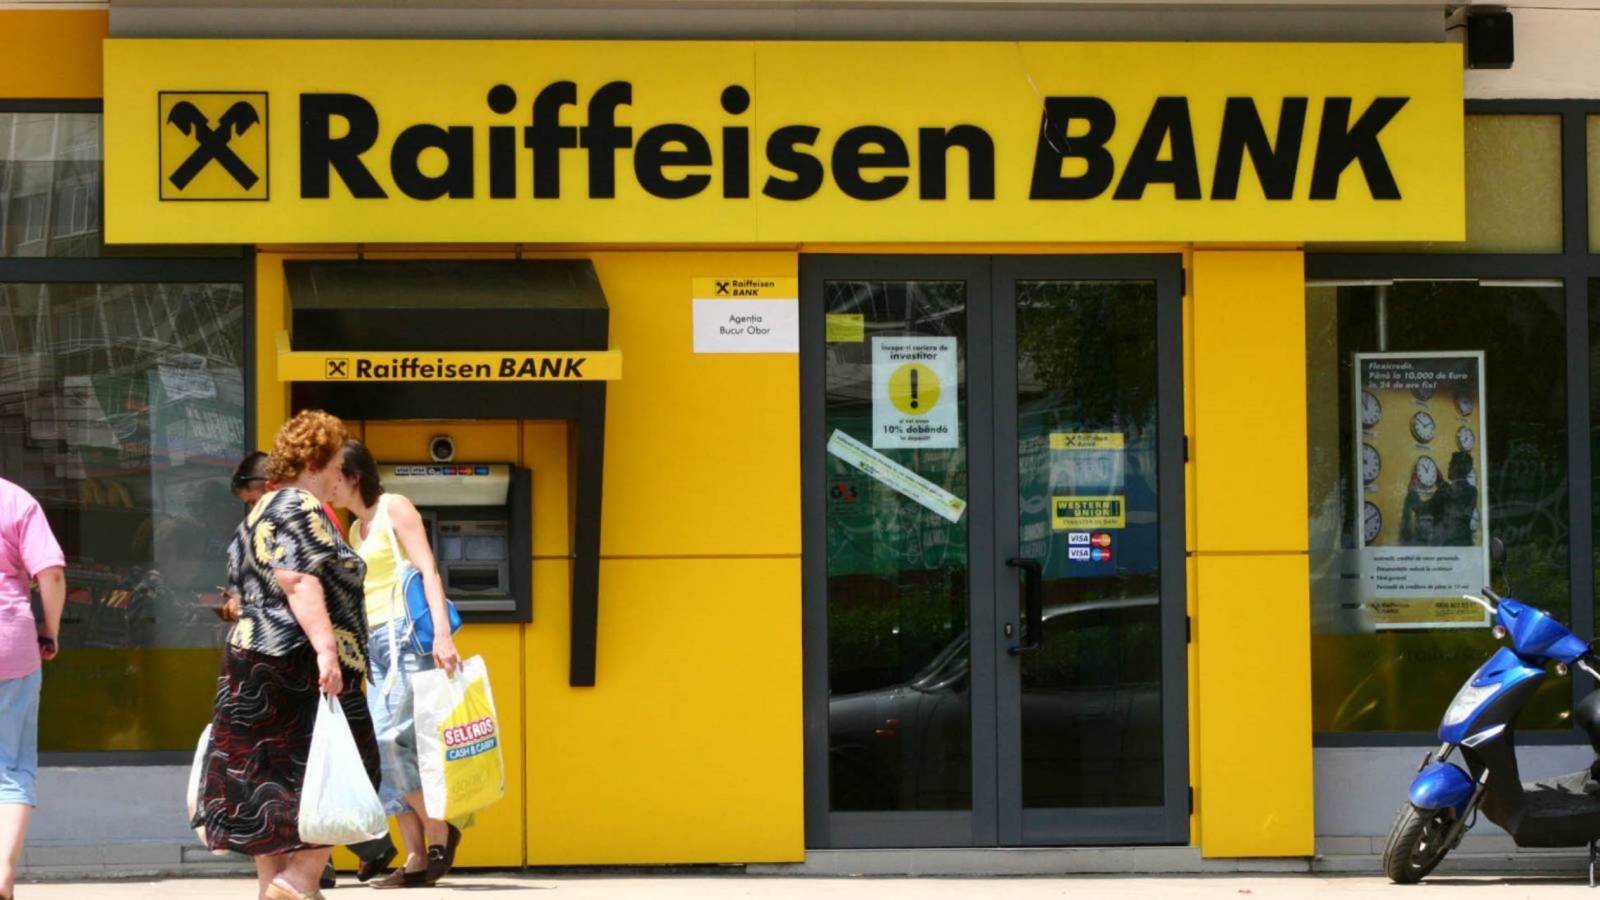 Raiffeisen Bank inchidere